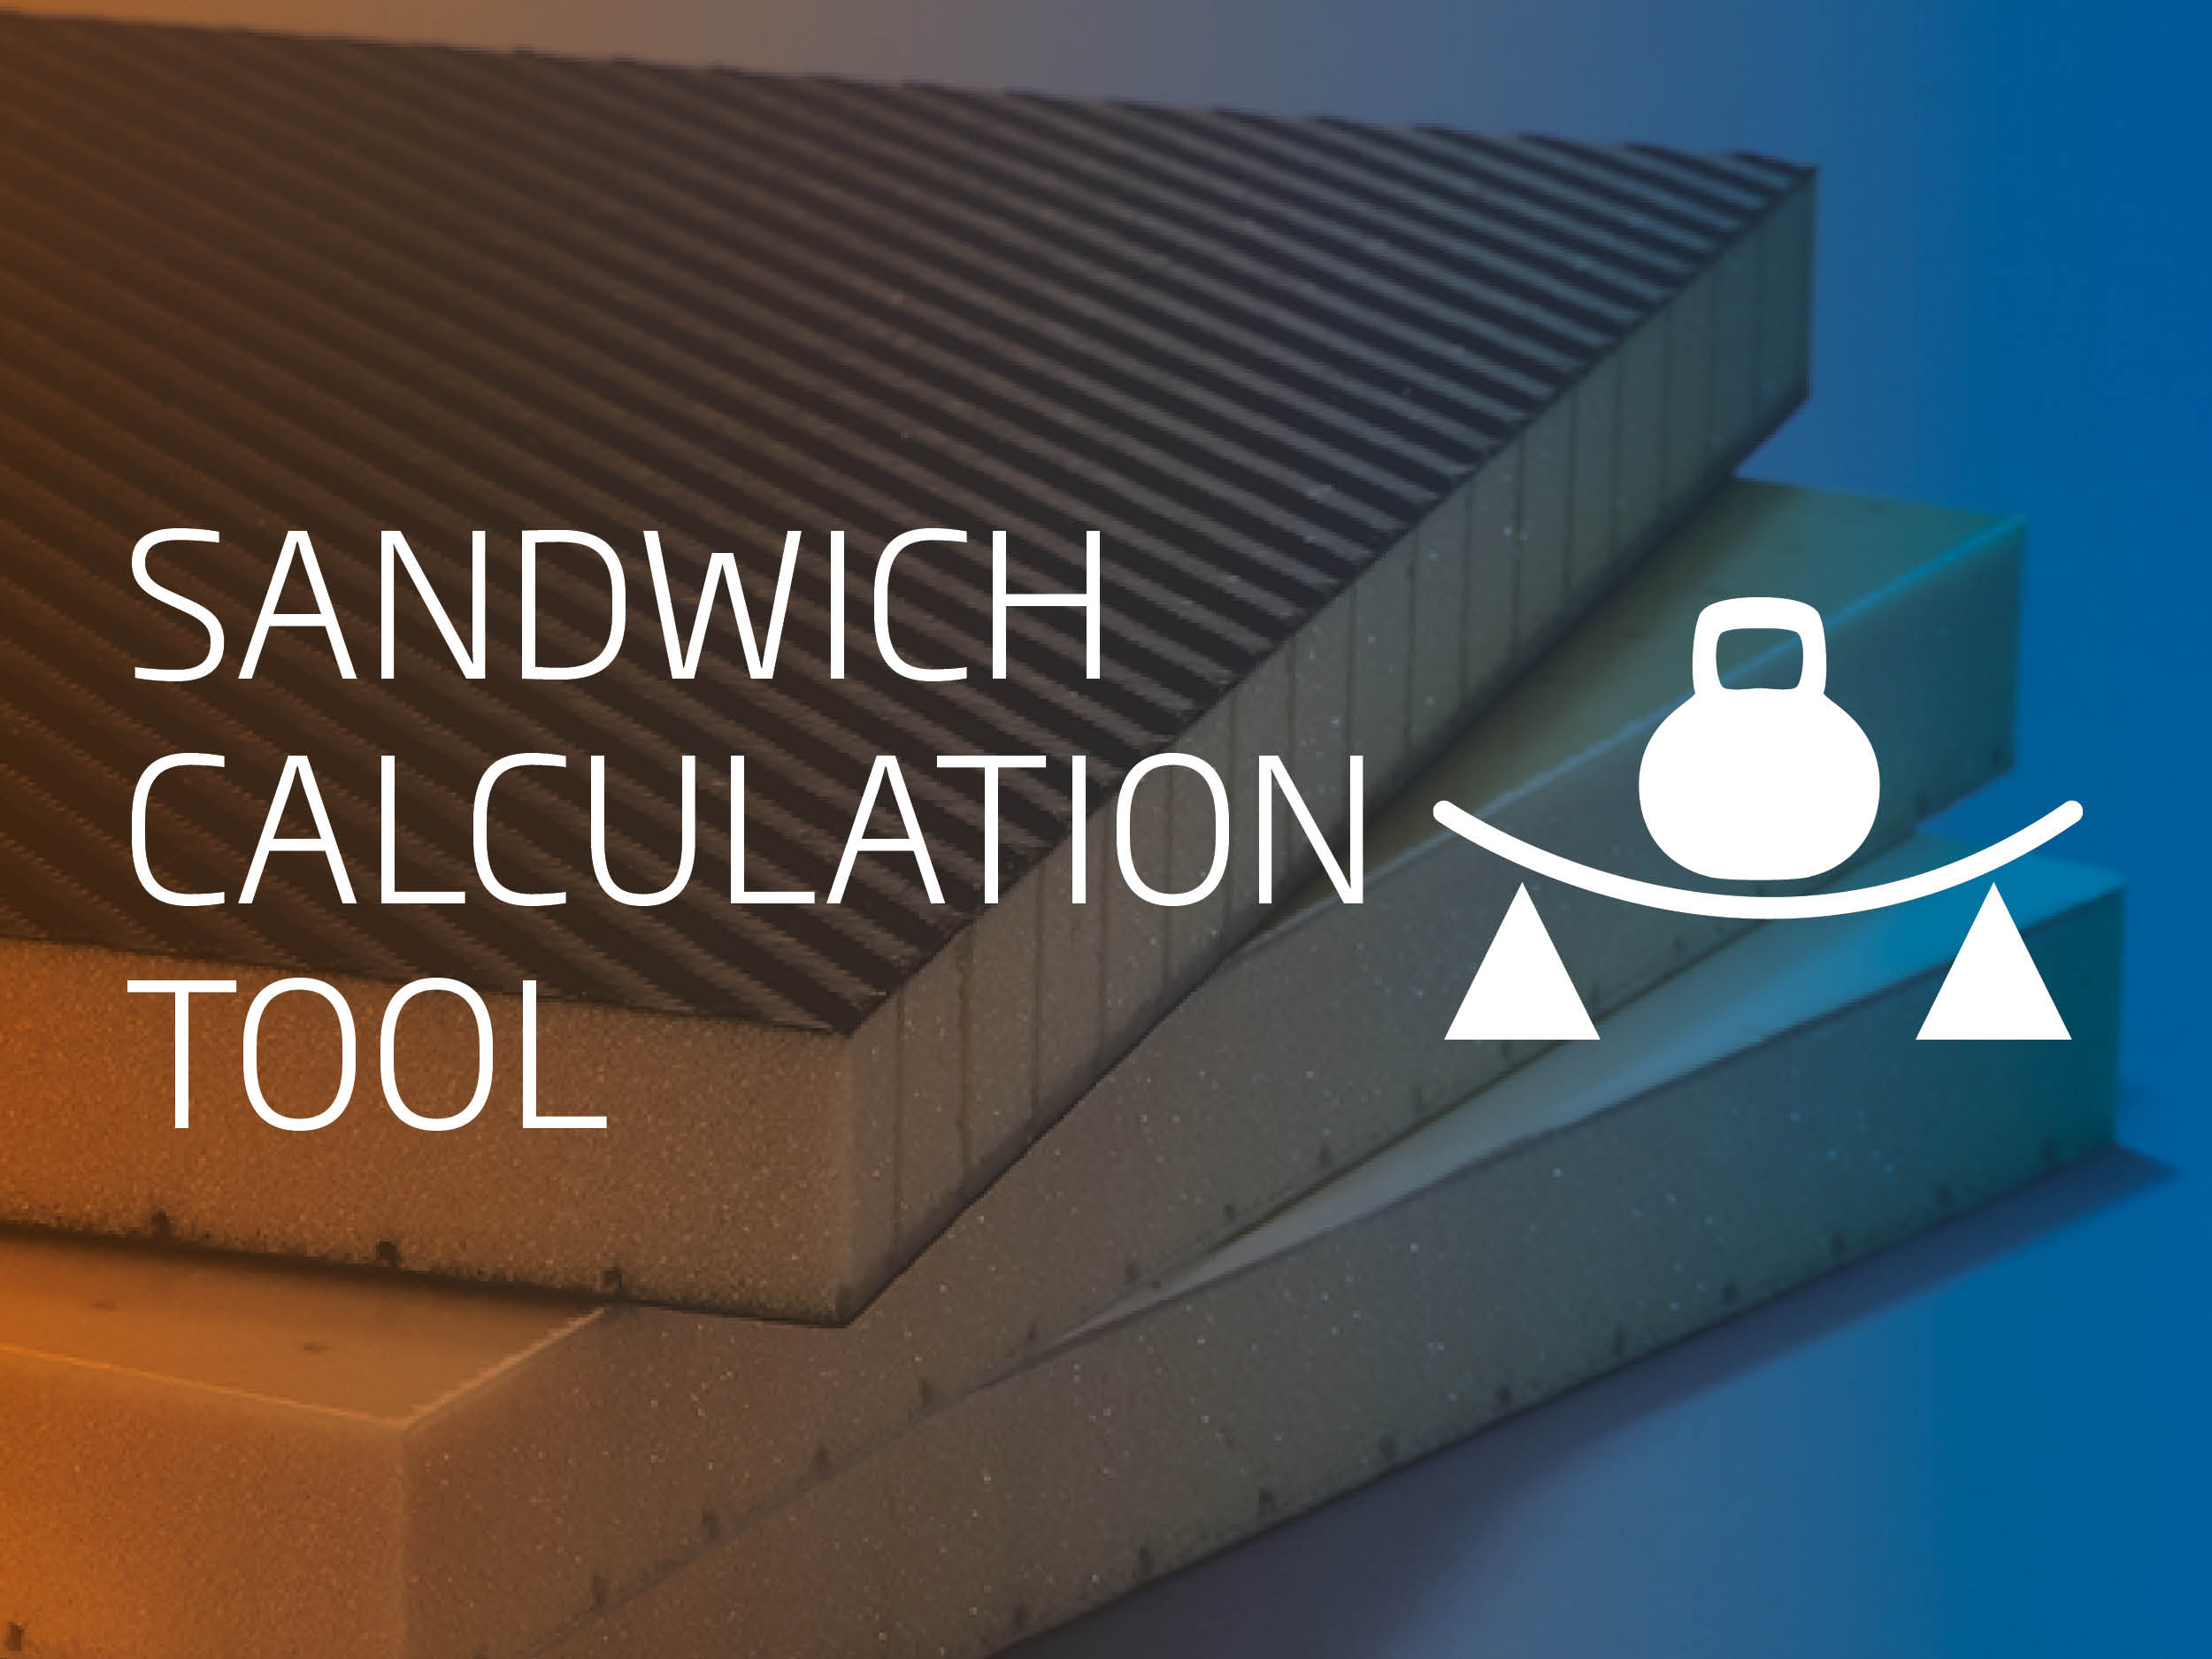 Diab Sandwich Calculation tool